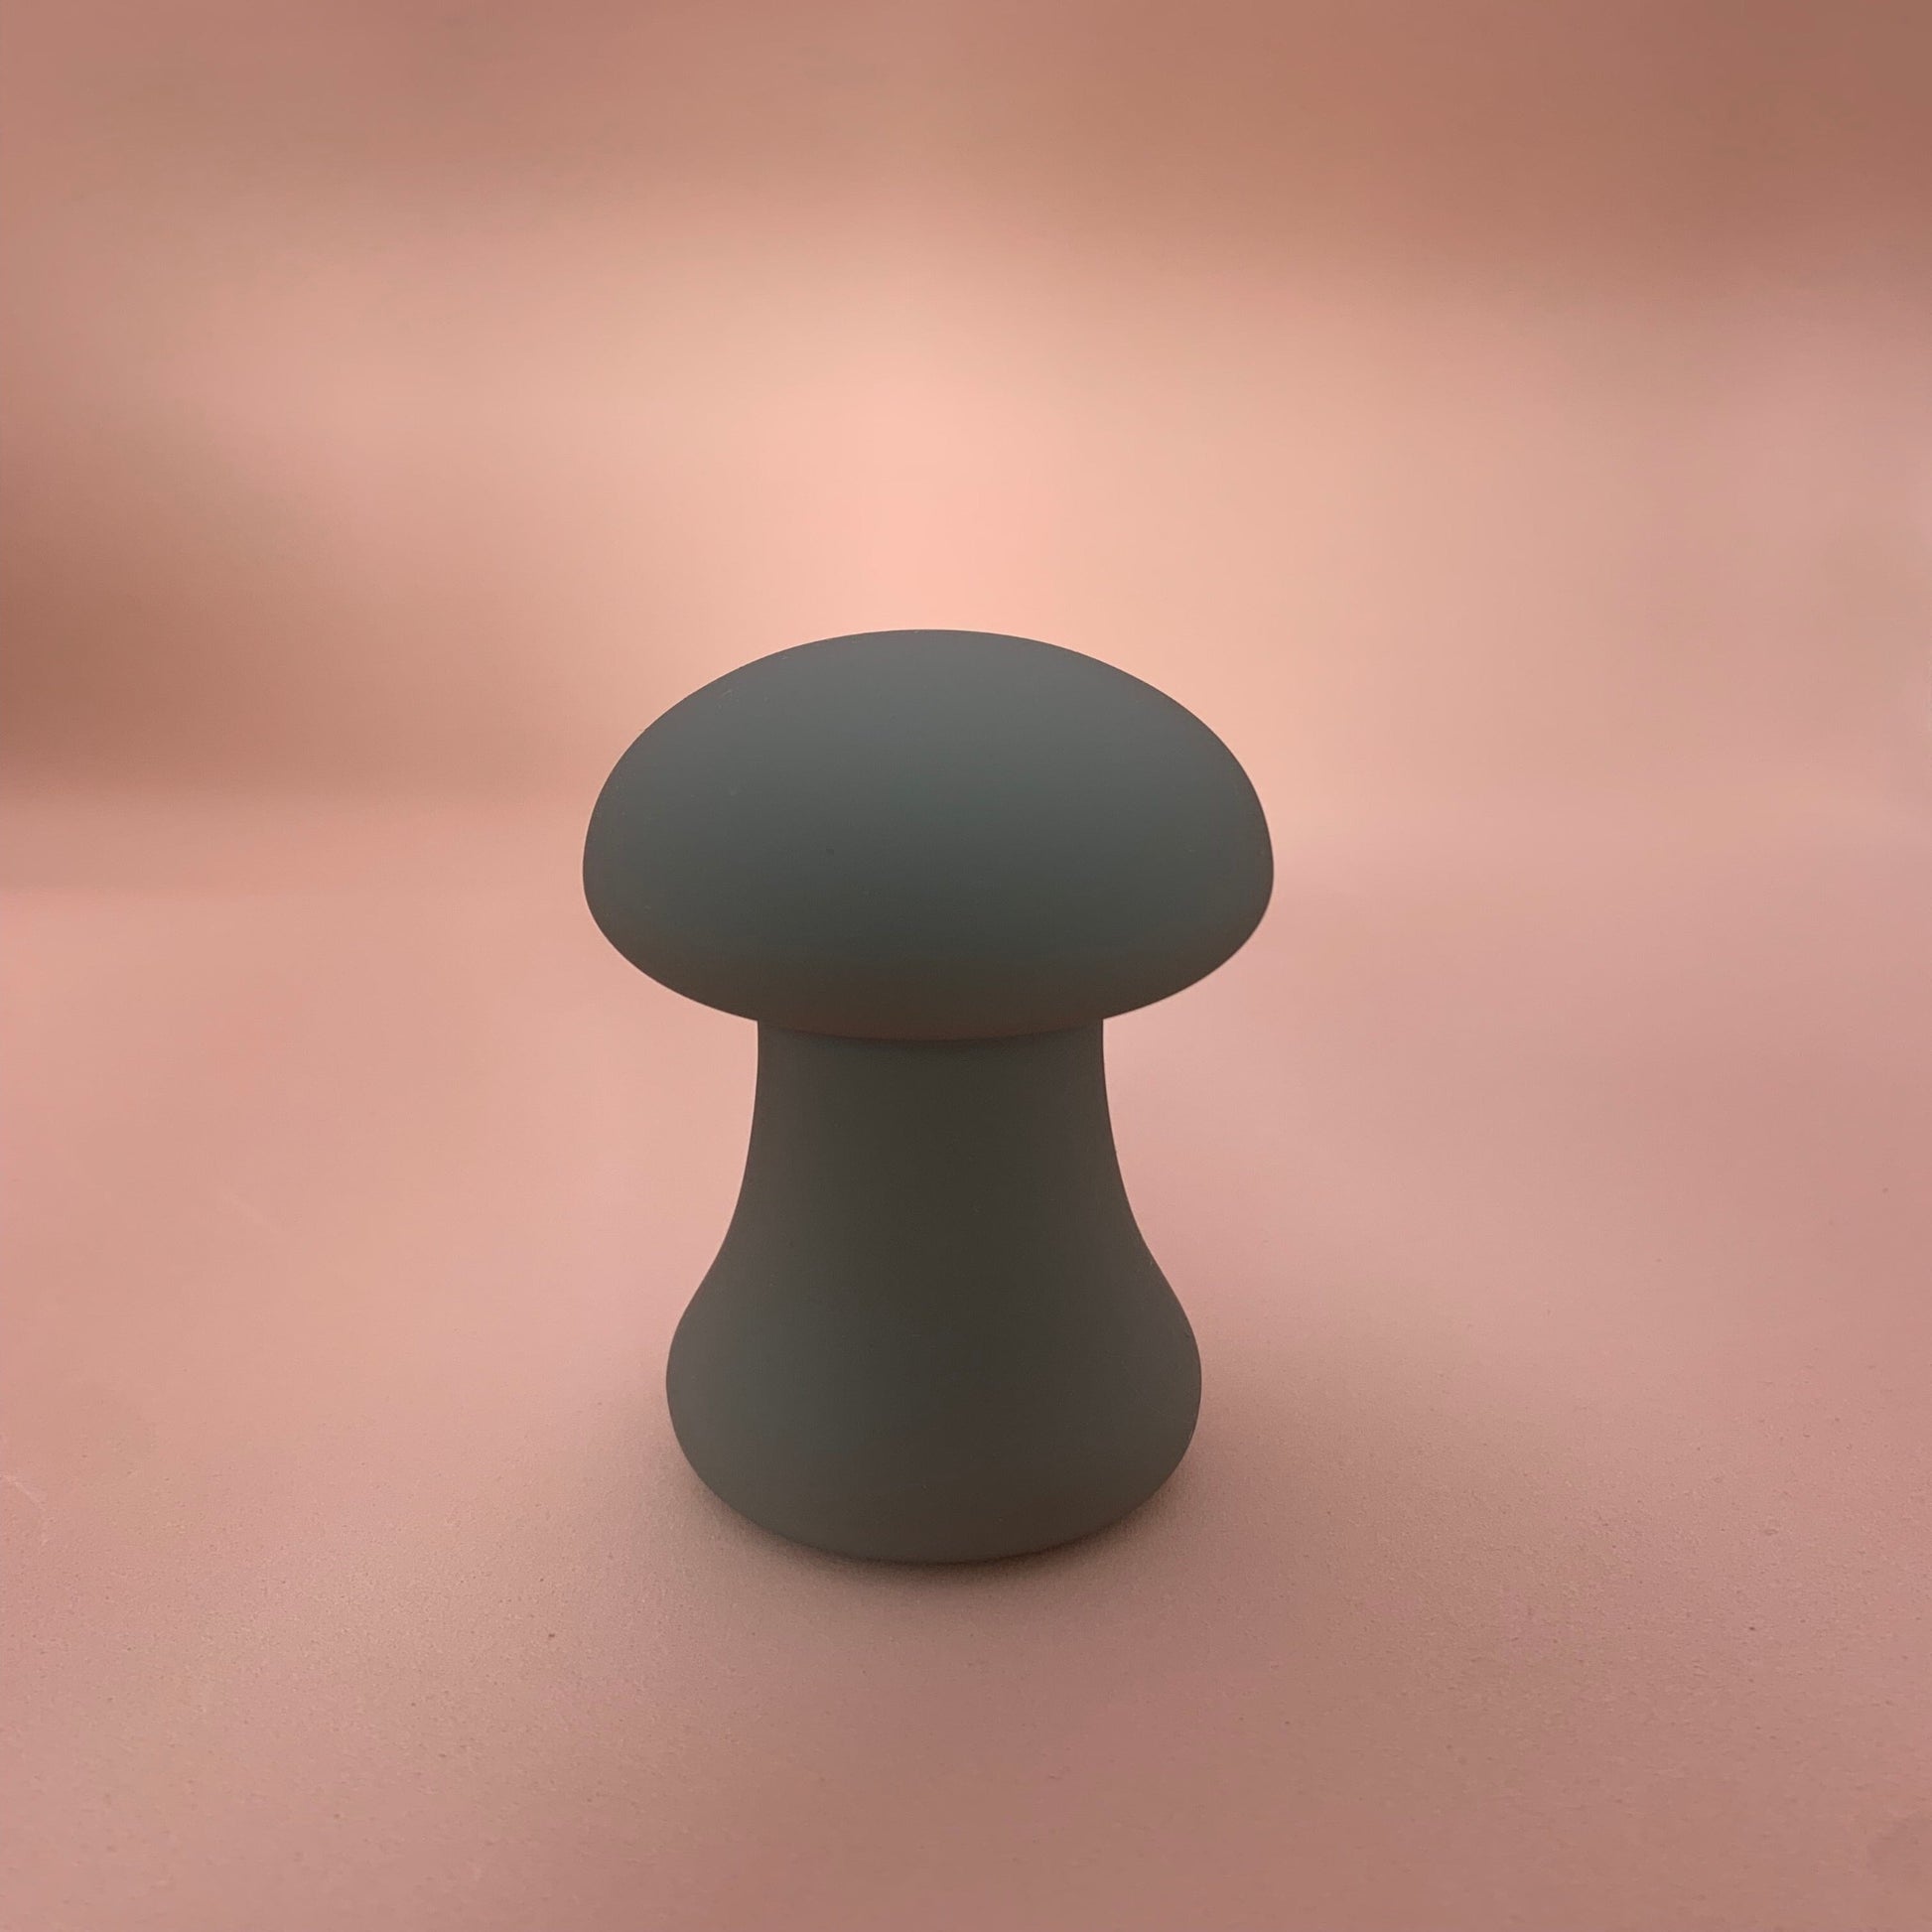 mushroom shaped standing clitoral mini vibrator in colour khaki green 